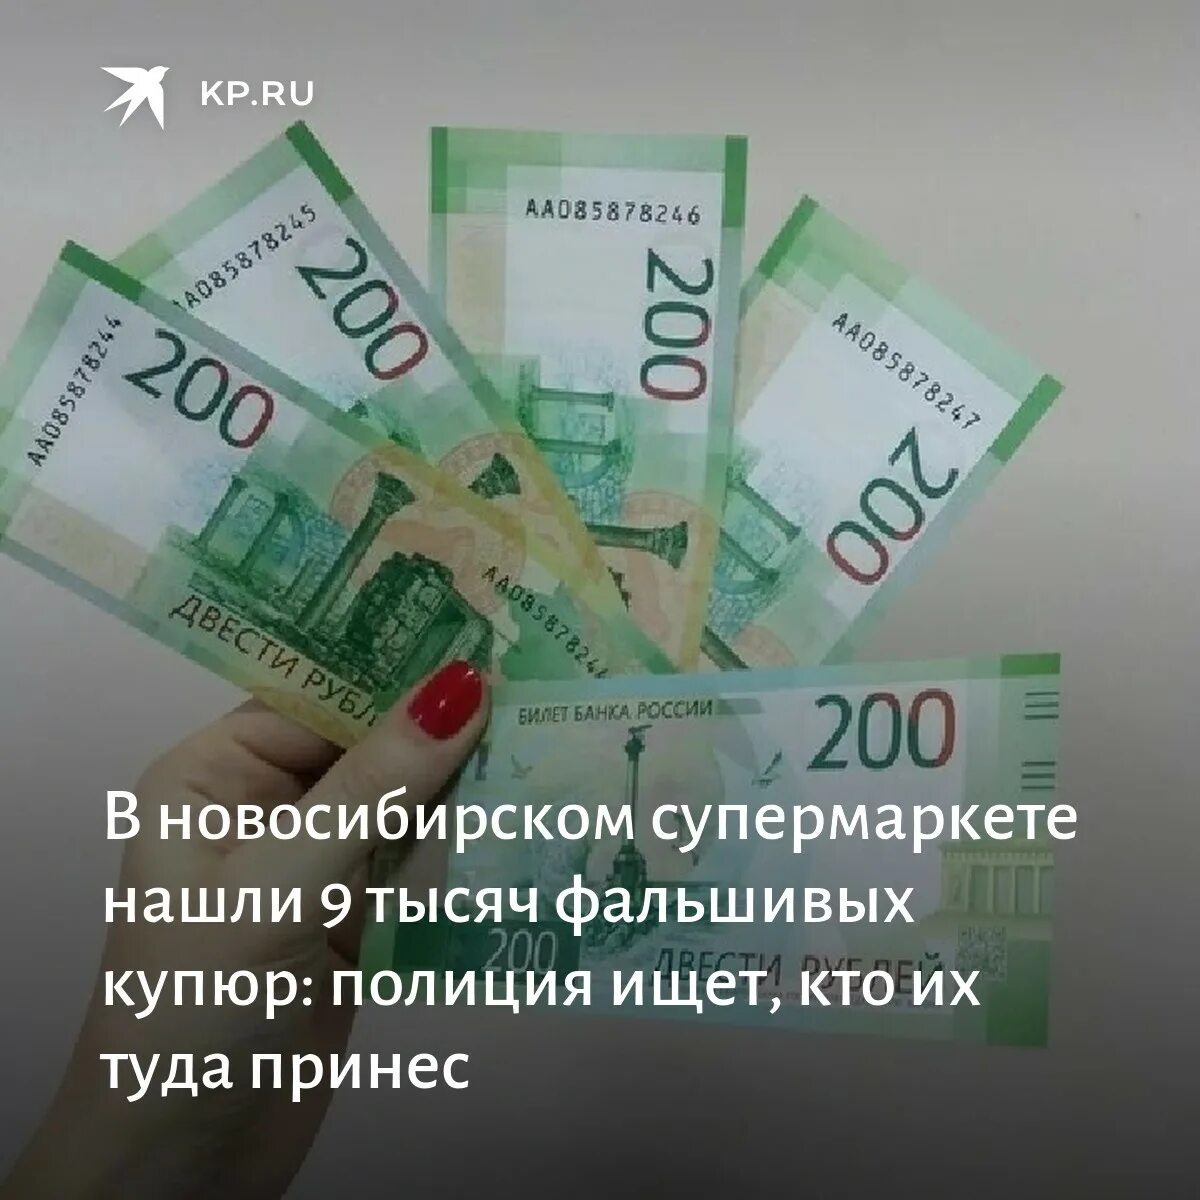 15 тыс 9 1 тыс. 9 Тысяч рублей. Девять тысяч. 9 Тысяч рублей в банке. Фальшивые купюры Новосибирск осуждены.